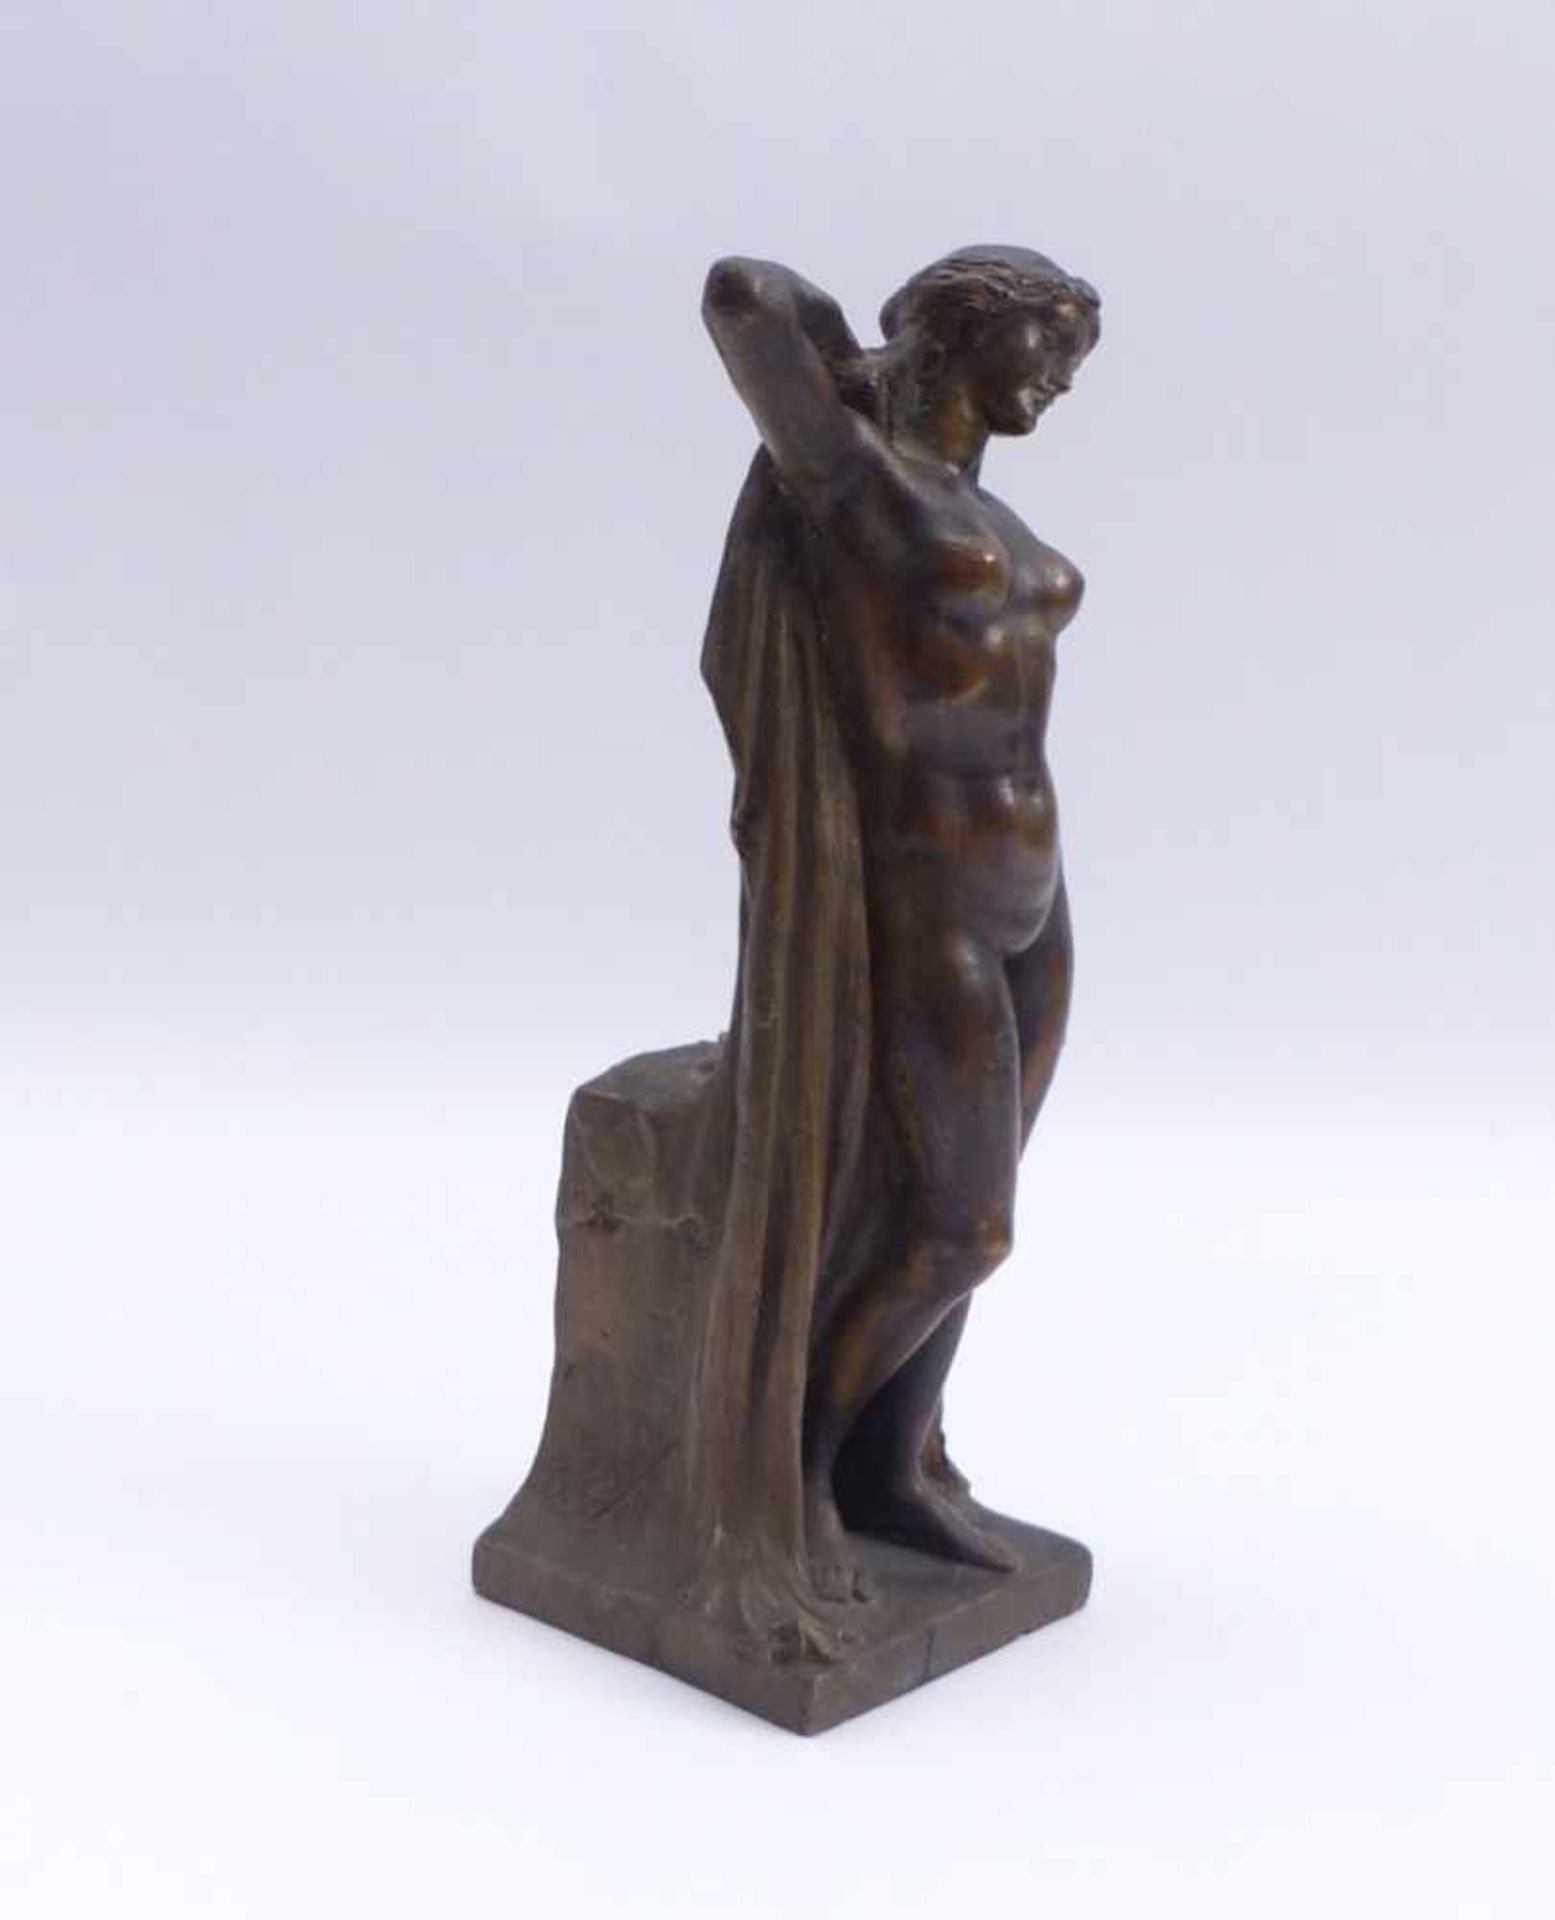 Tamburlini, AchilleAphrodite(1873 geb.) Auf Plinthe stehender weiblicher Akt mit Mantel. Bronze, - Image 2 of 2